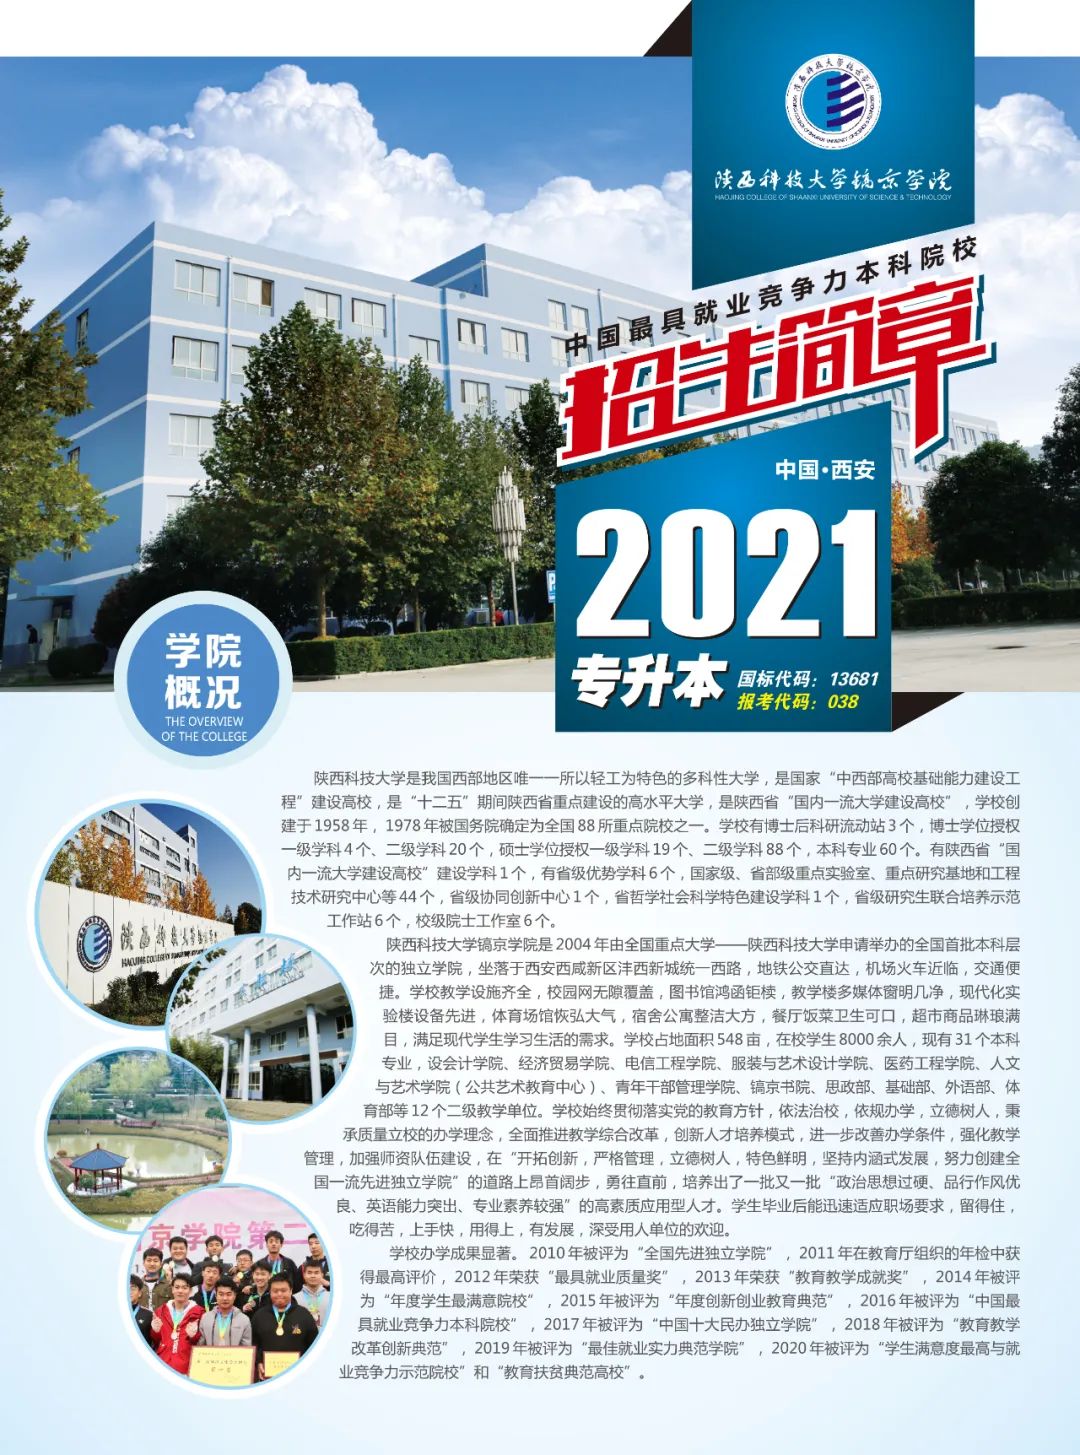 2021年陕西科技大学镐京学院专升本招生简章